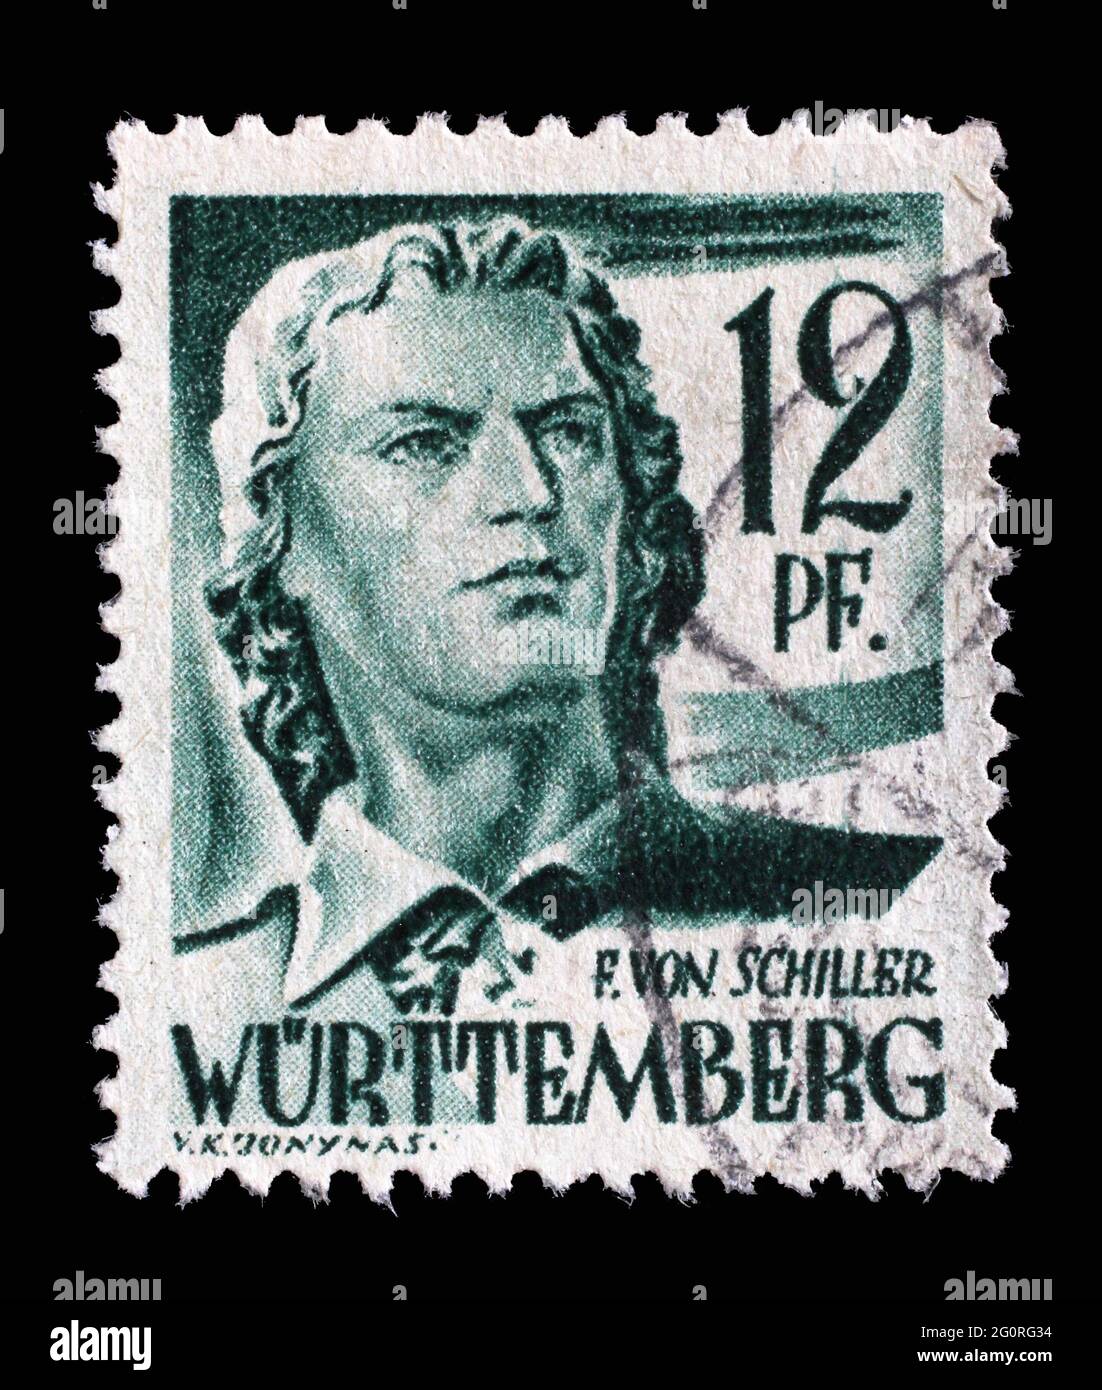 Timbre imprimé en Allemagne, l'occupation française du Wurtemberg montre Friedrich von Schiller, poète et écrivain, vers 1947 Banque D'Images